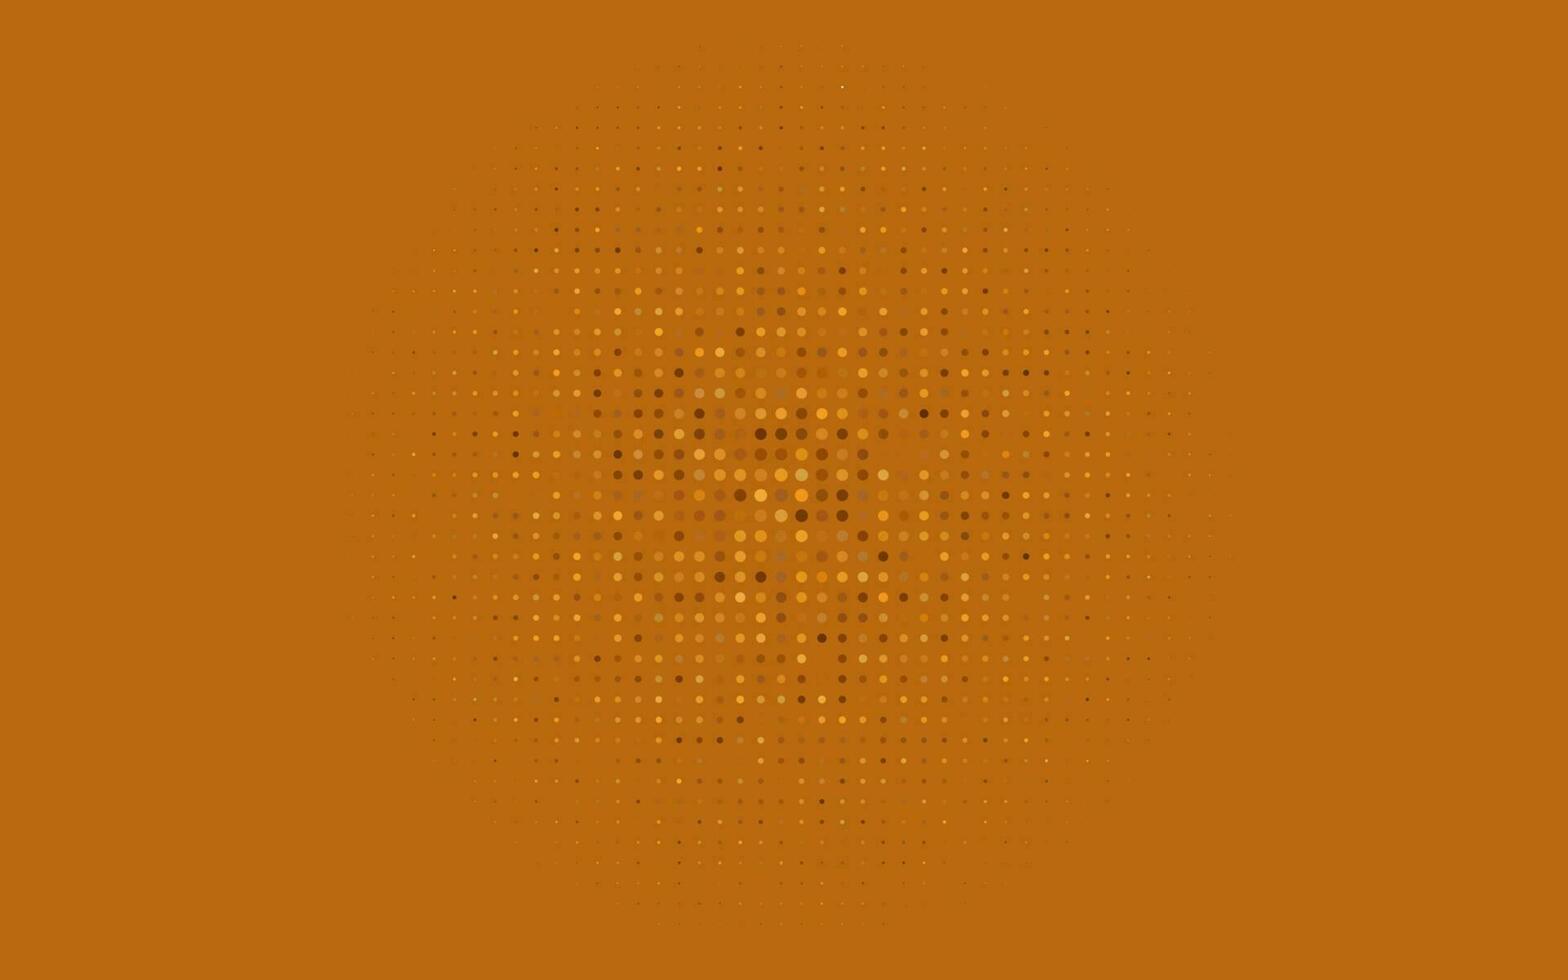 ljusgul, orange vektorbakgrund med bubblor. vektor